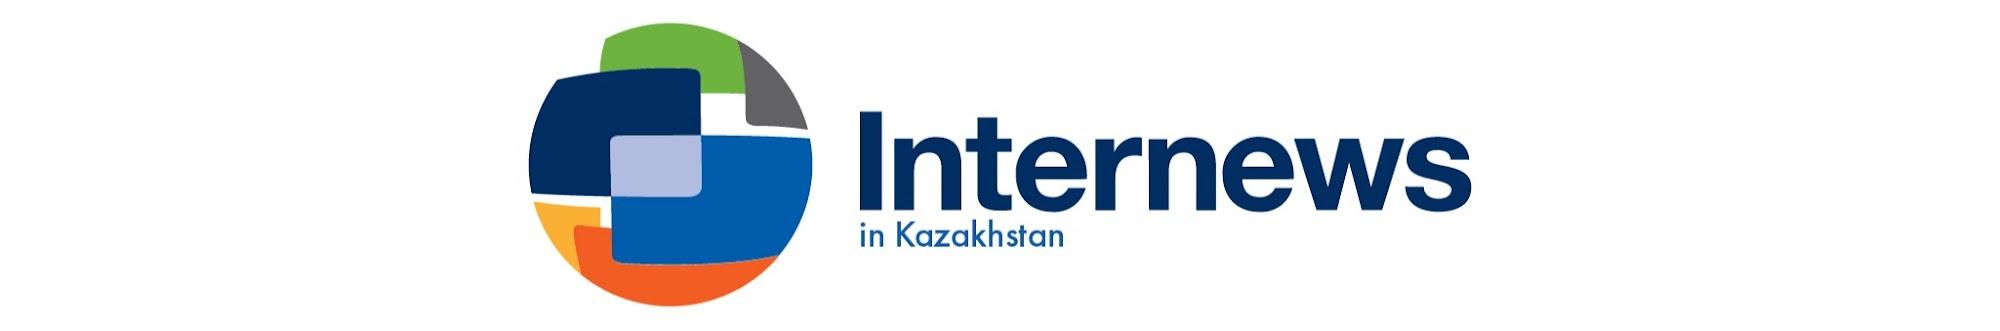 Internews in Kazakhstan